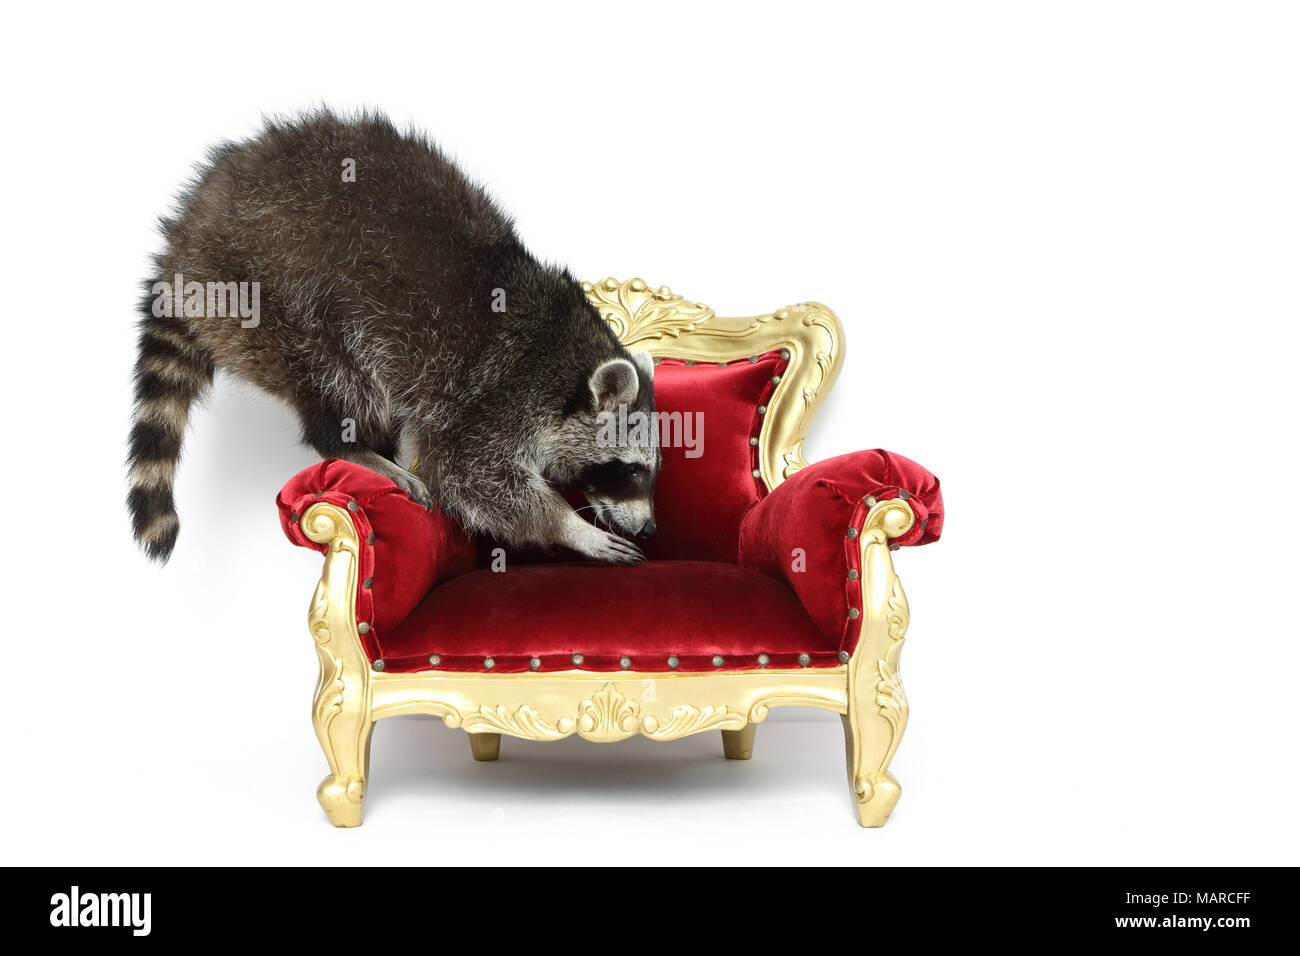 Raccoon (Procione lotor). Adulto arrampicata su una poltrona in stile barocco. Studio Immagine contro uno sfondo bianco. Germania Foto Stock